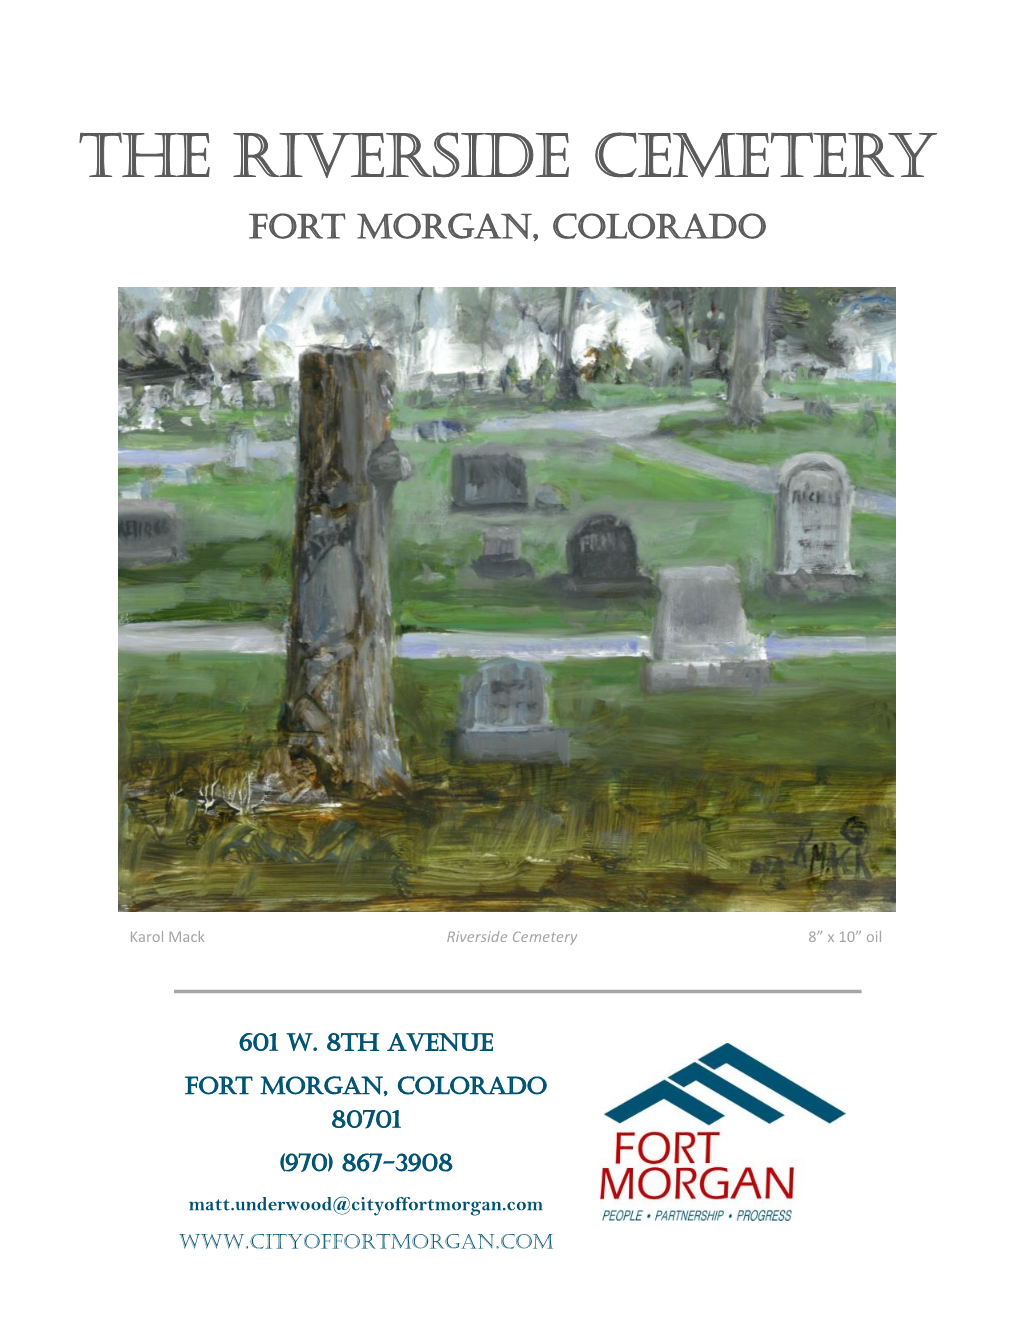 The Riverside Cemetery Fort Morgan, Colorado